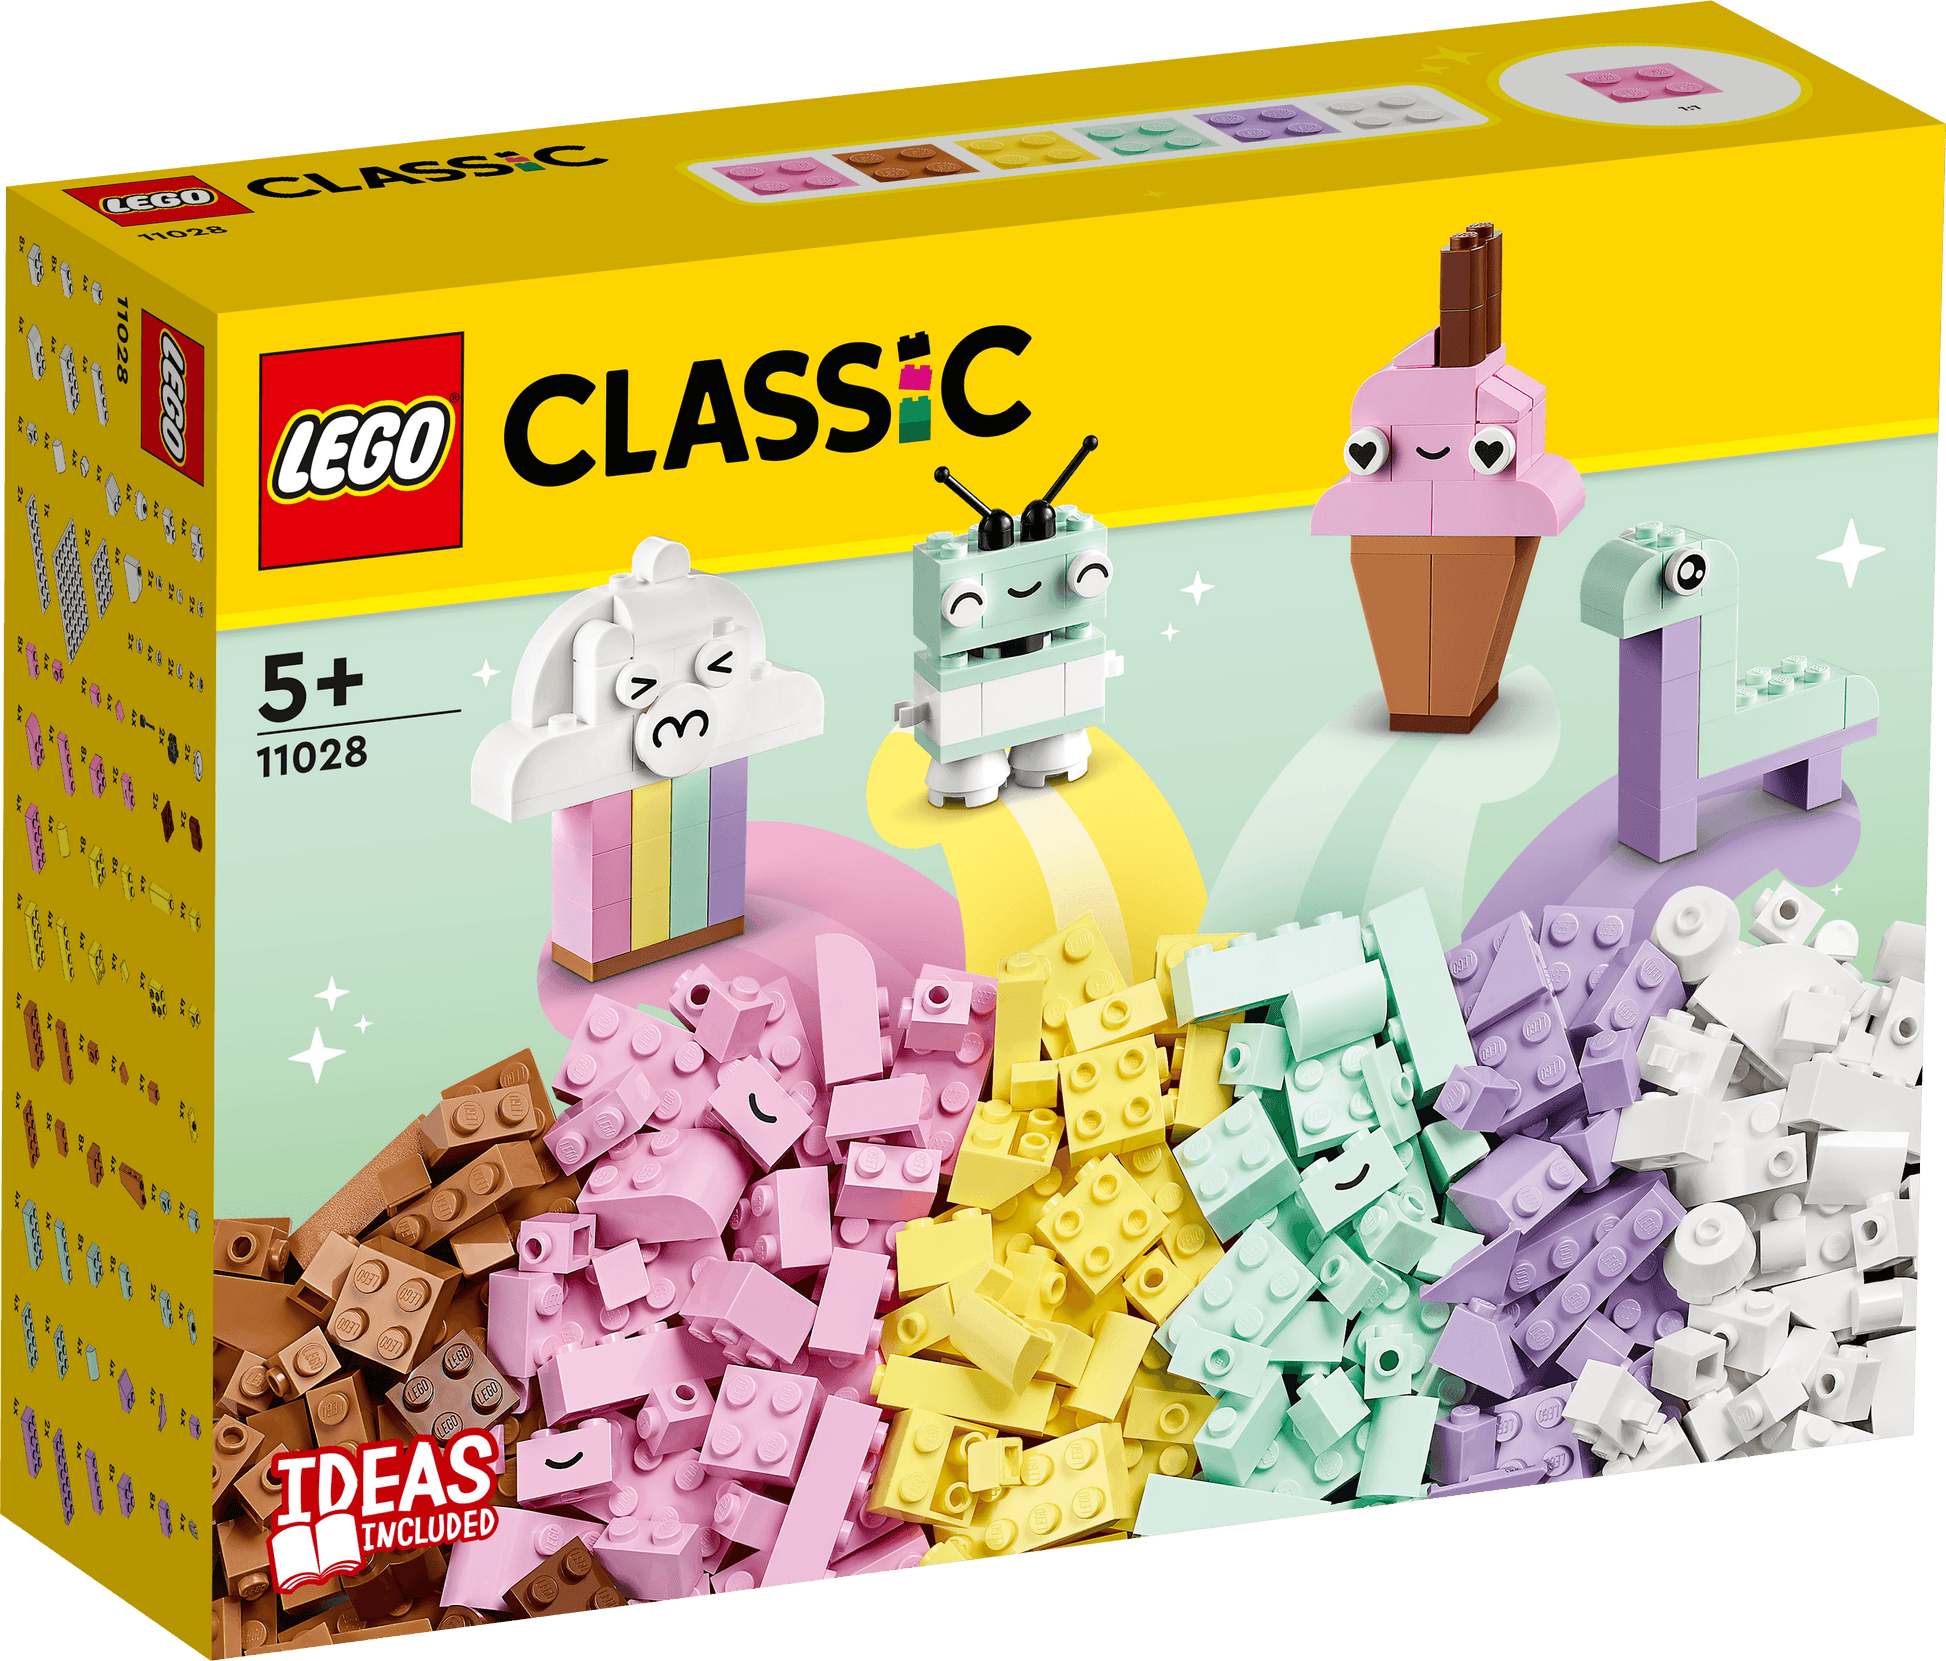 LEGO Creatief spelen met pastelkleuren 11028 Classic | 2TTOYS ✓ Official shop<br>